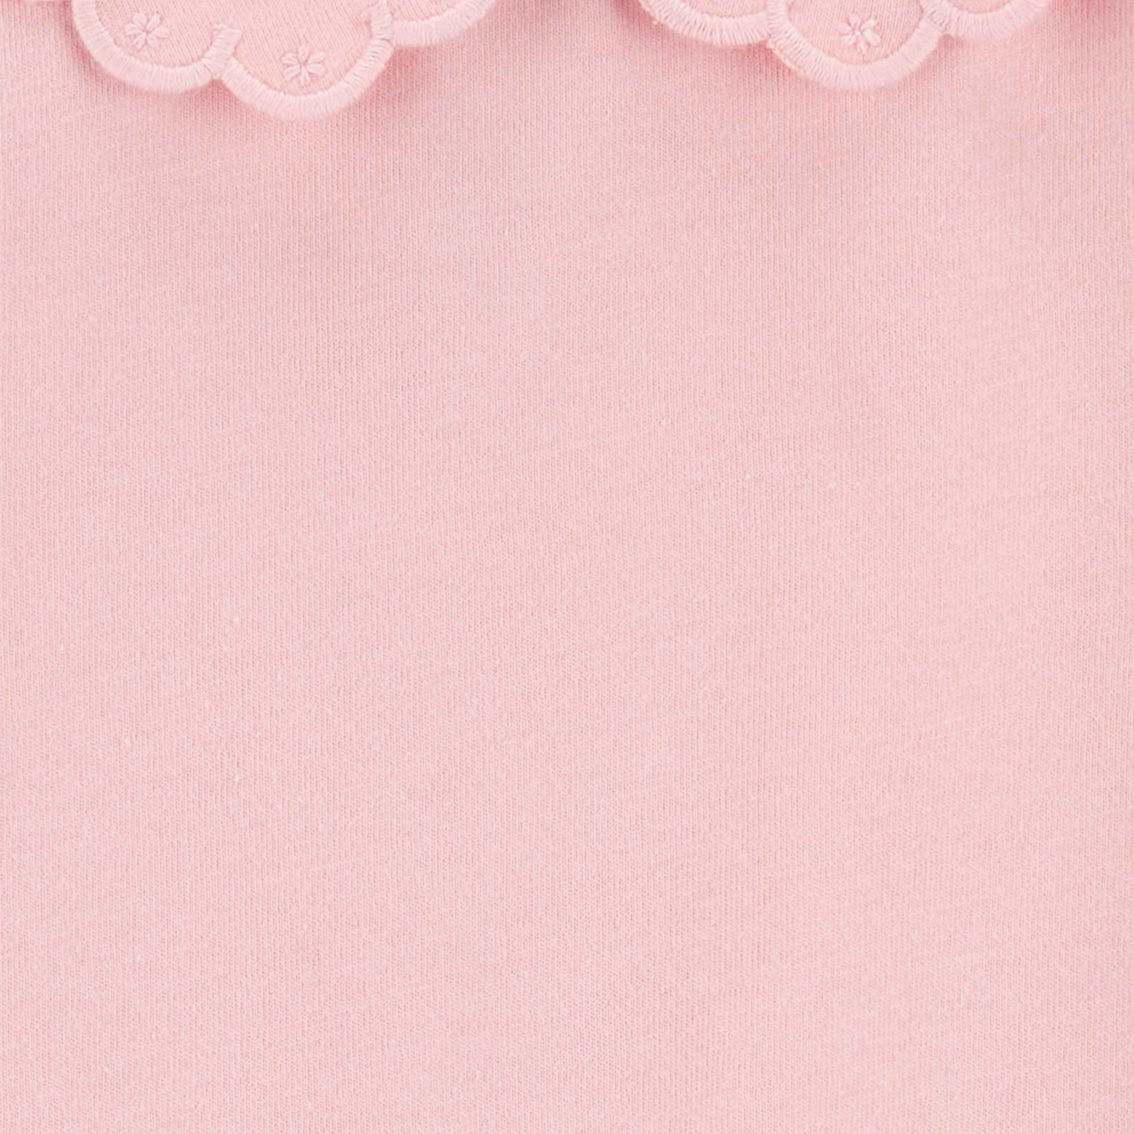 Oshkosh Toddler Girls Pink Scalloped Peter Pan Collar Jersey Tee - Image 2 of 2